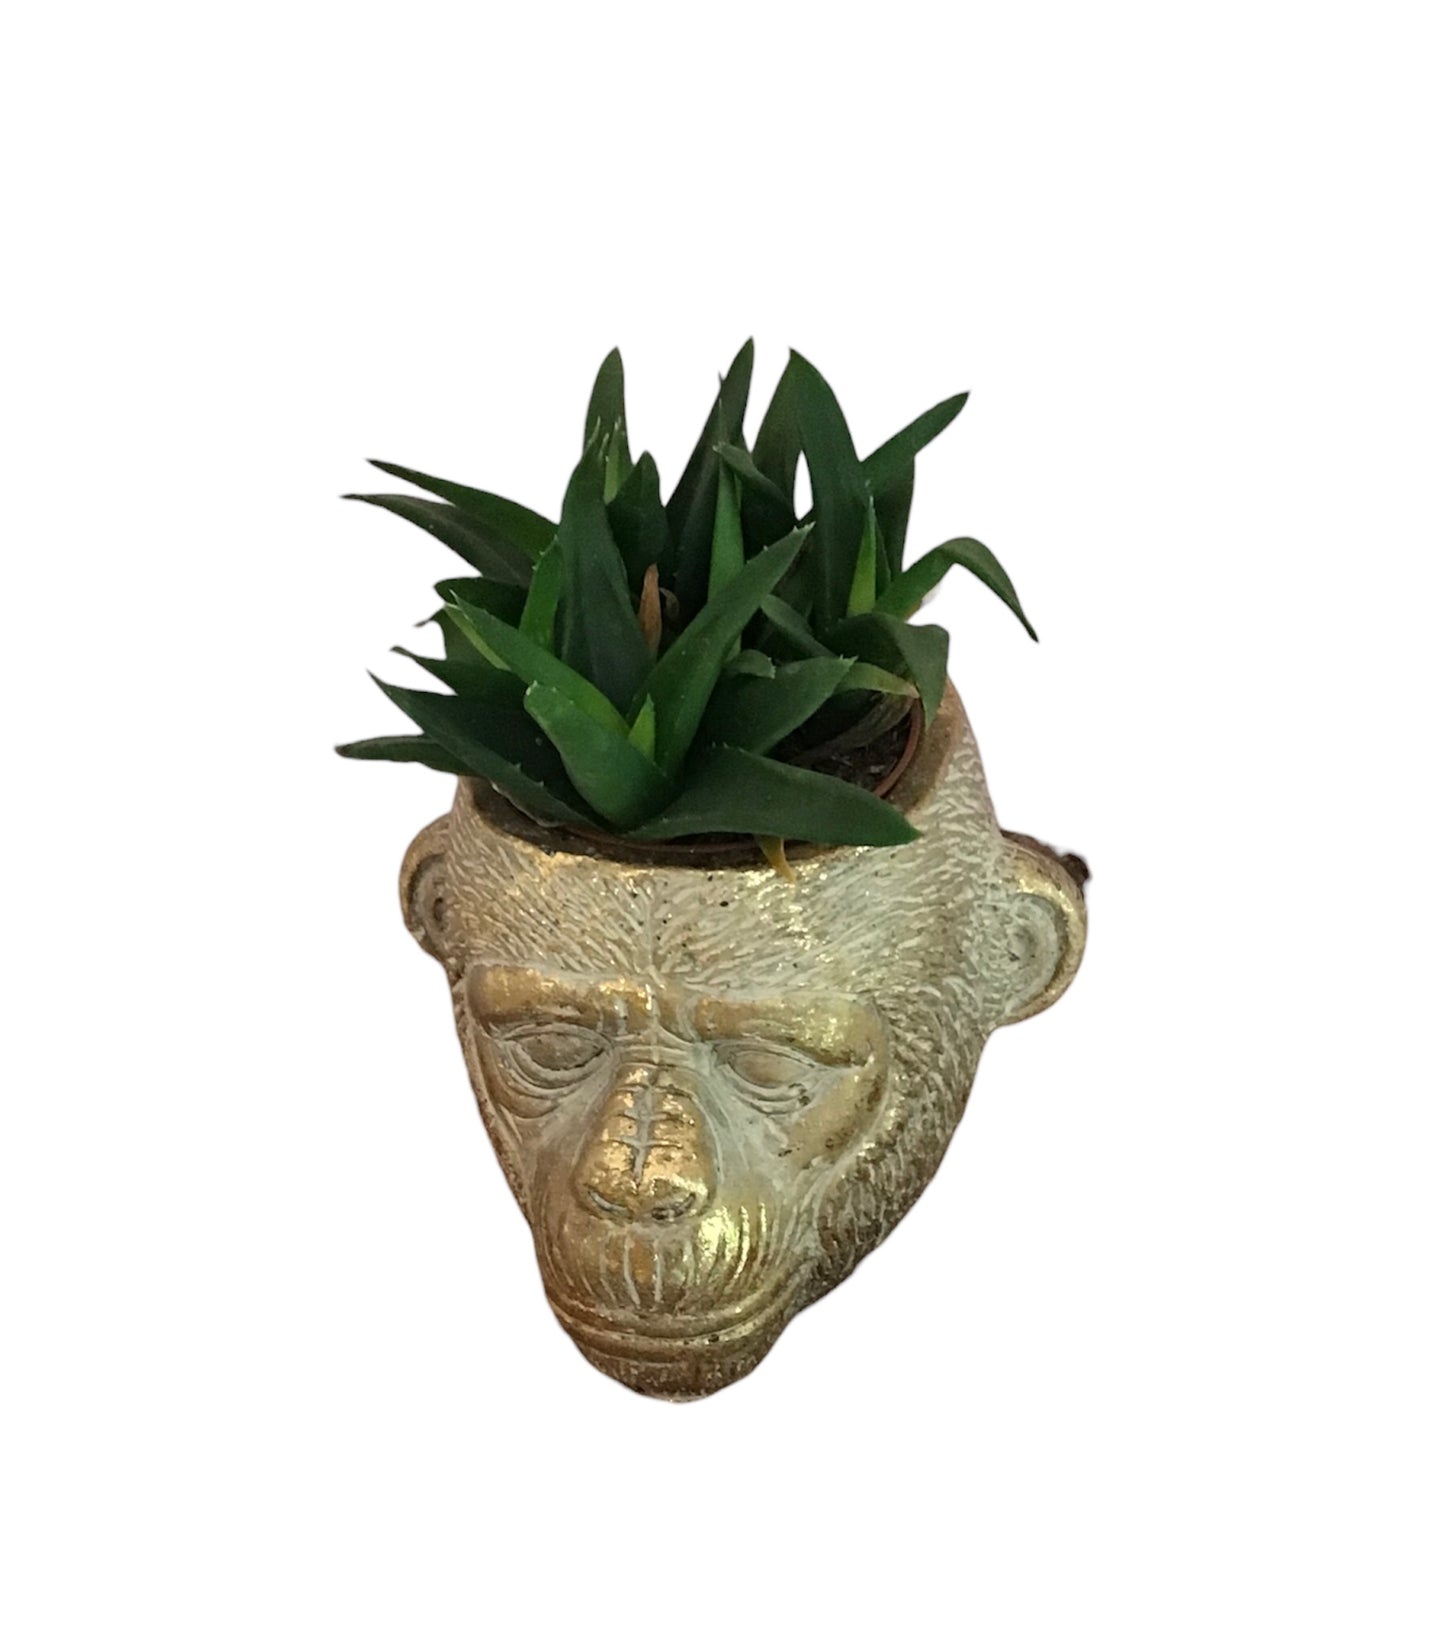 Mini Aloe Vera Plant In a Monkey Ceramic Pot